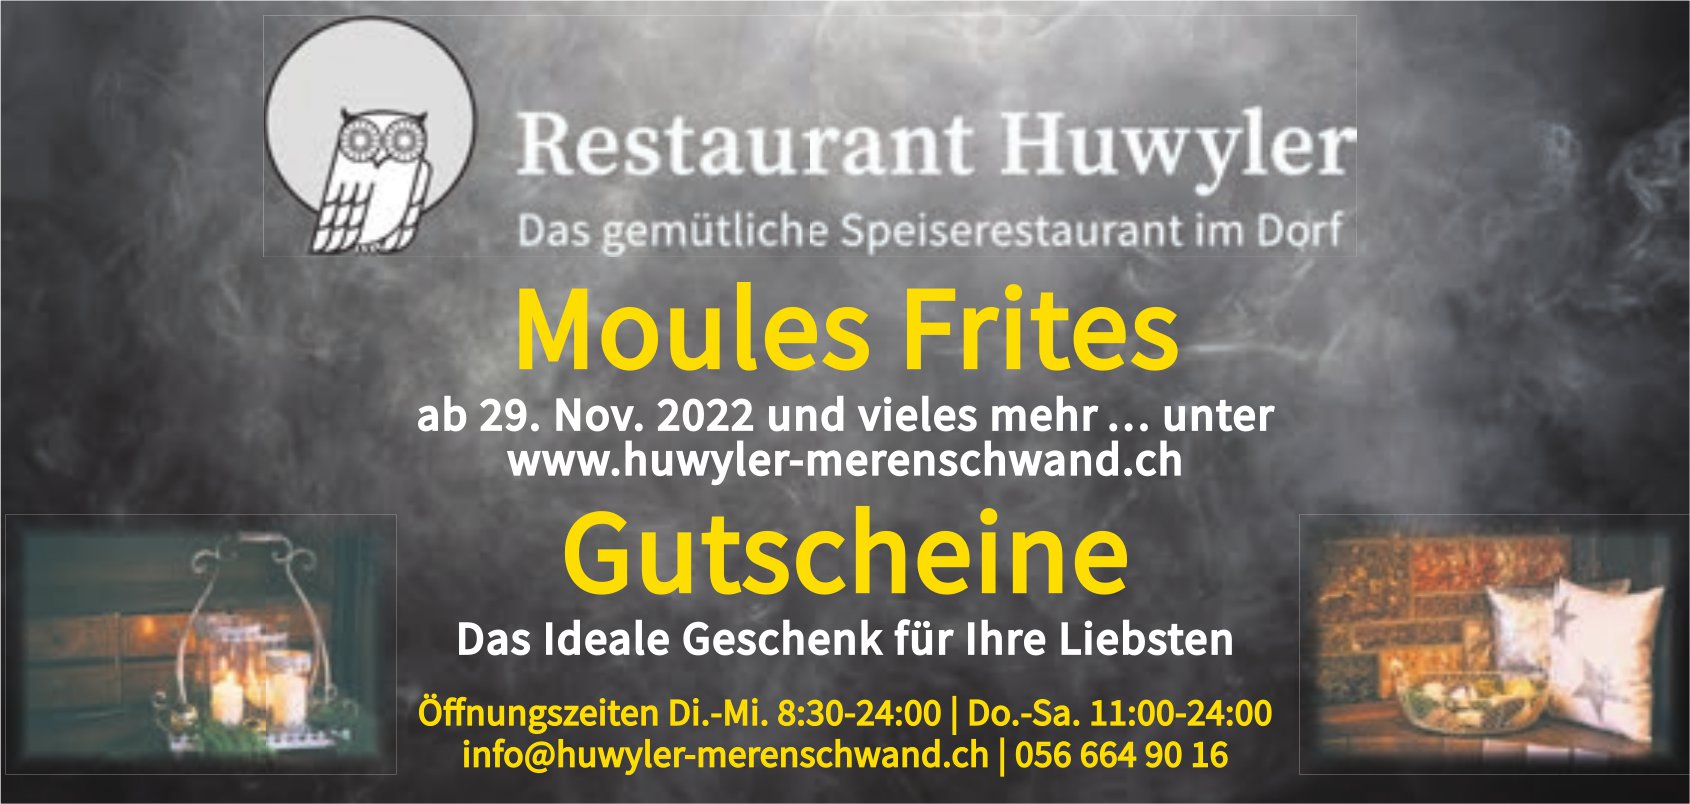 Restaurant Huwyler, Merenschwand - Moules Frites und Gutscheine